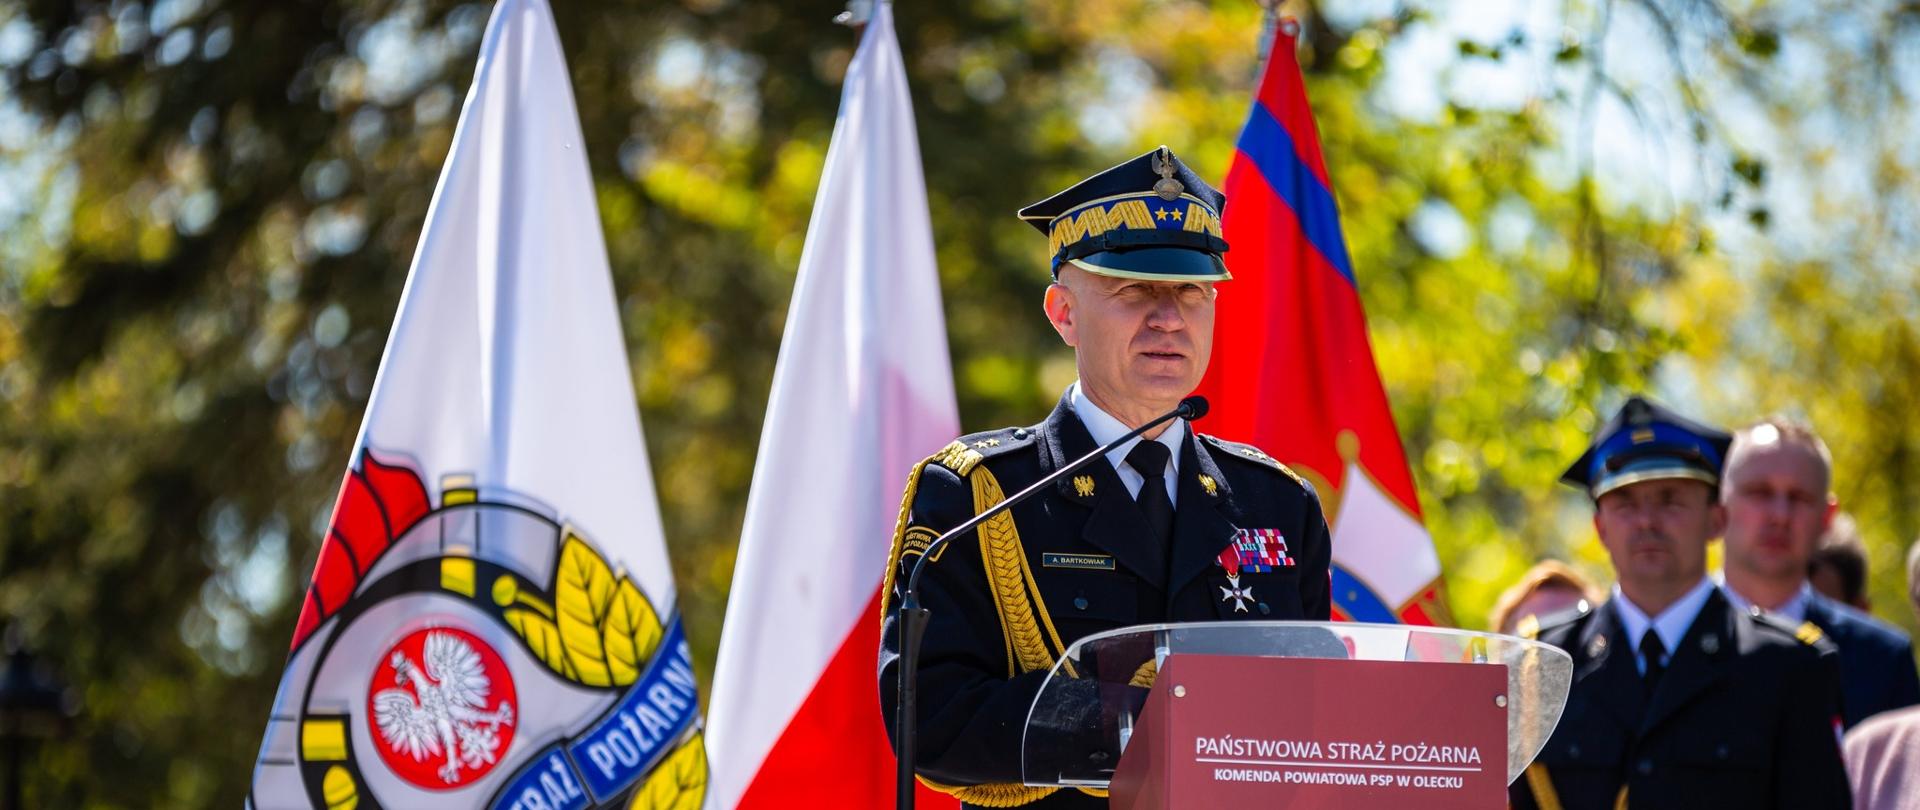 Na zdjęciu przy mównicy Komendant Główny PSP. W tle flagi Polski i PSP.